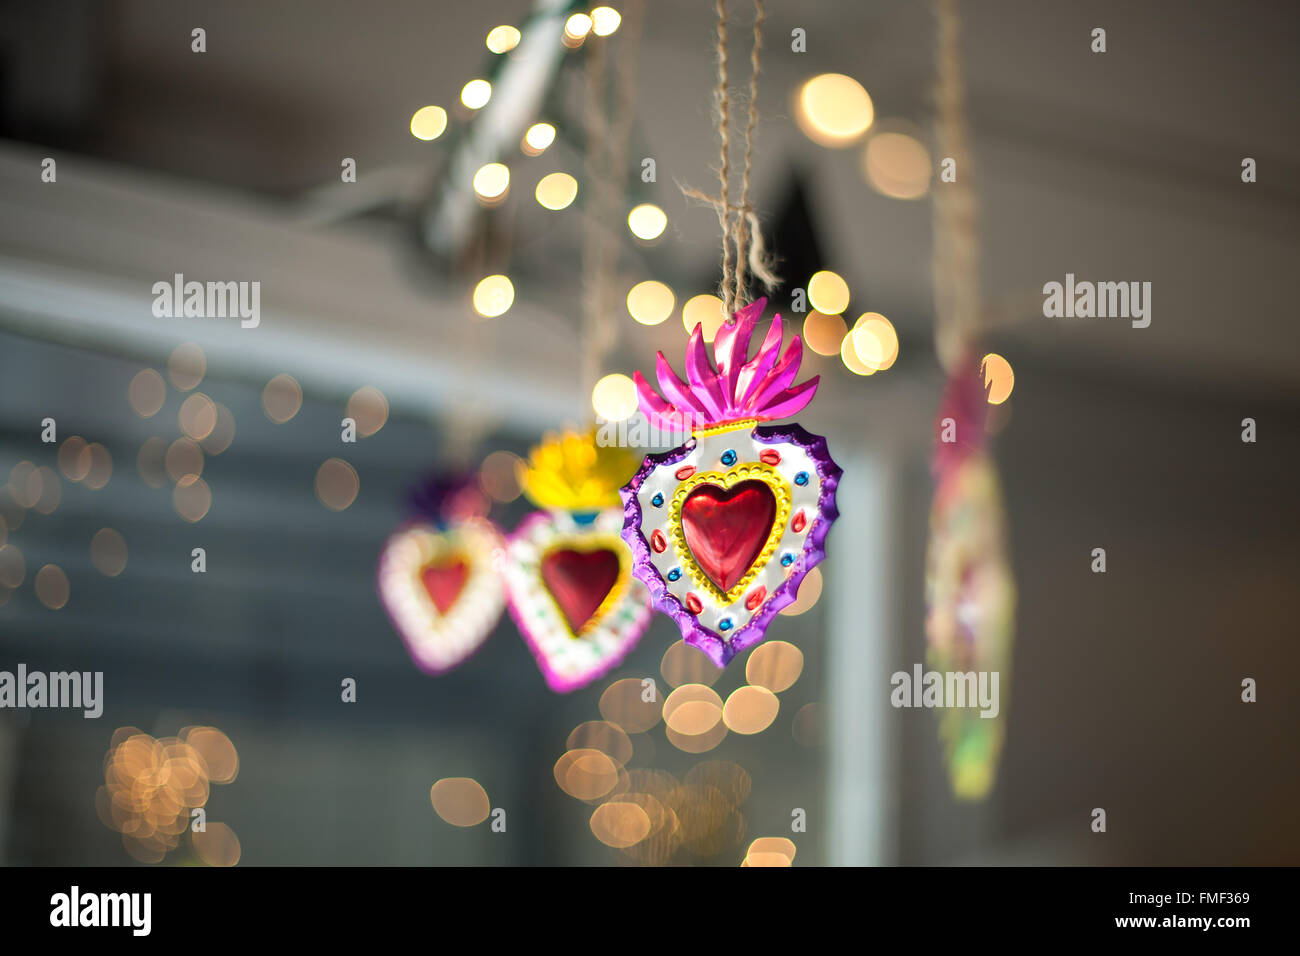 Décorations sacré-cœur accroché dans une fenêtre avec twinkle lights derrière eux. Banque D'Images